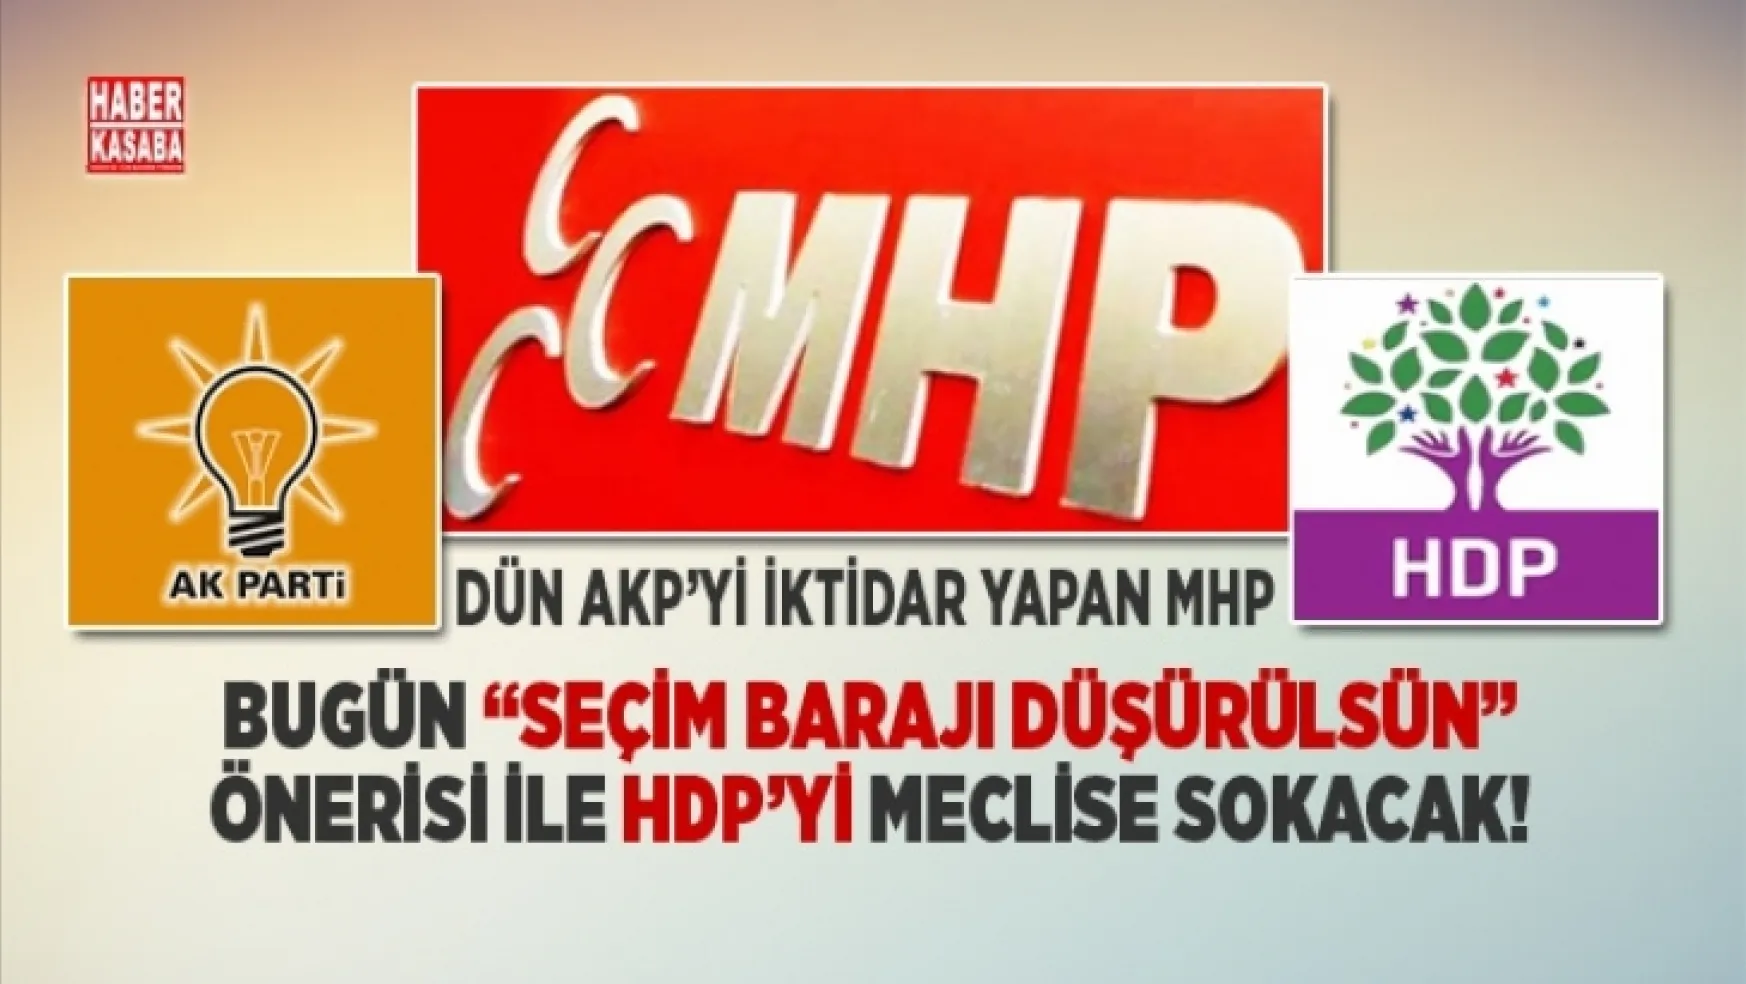 AKP'yi Dün iktidar yapan MHP, 'Seçim barajı düşürülsün' önerisi ile bugün de HDP'yi meclise sokacak!